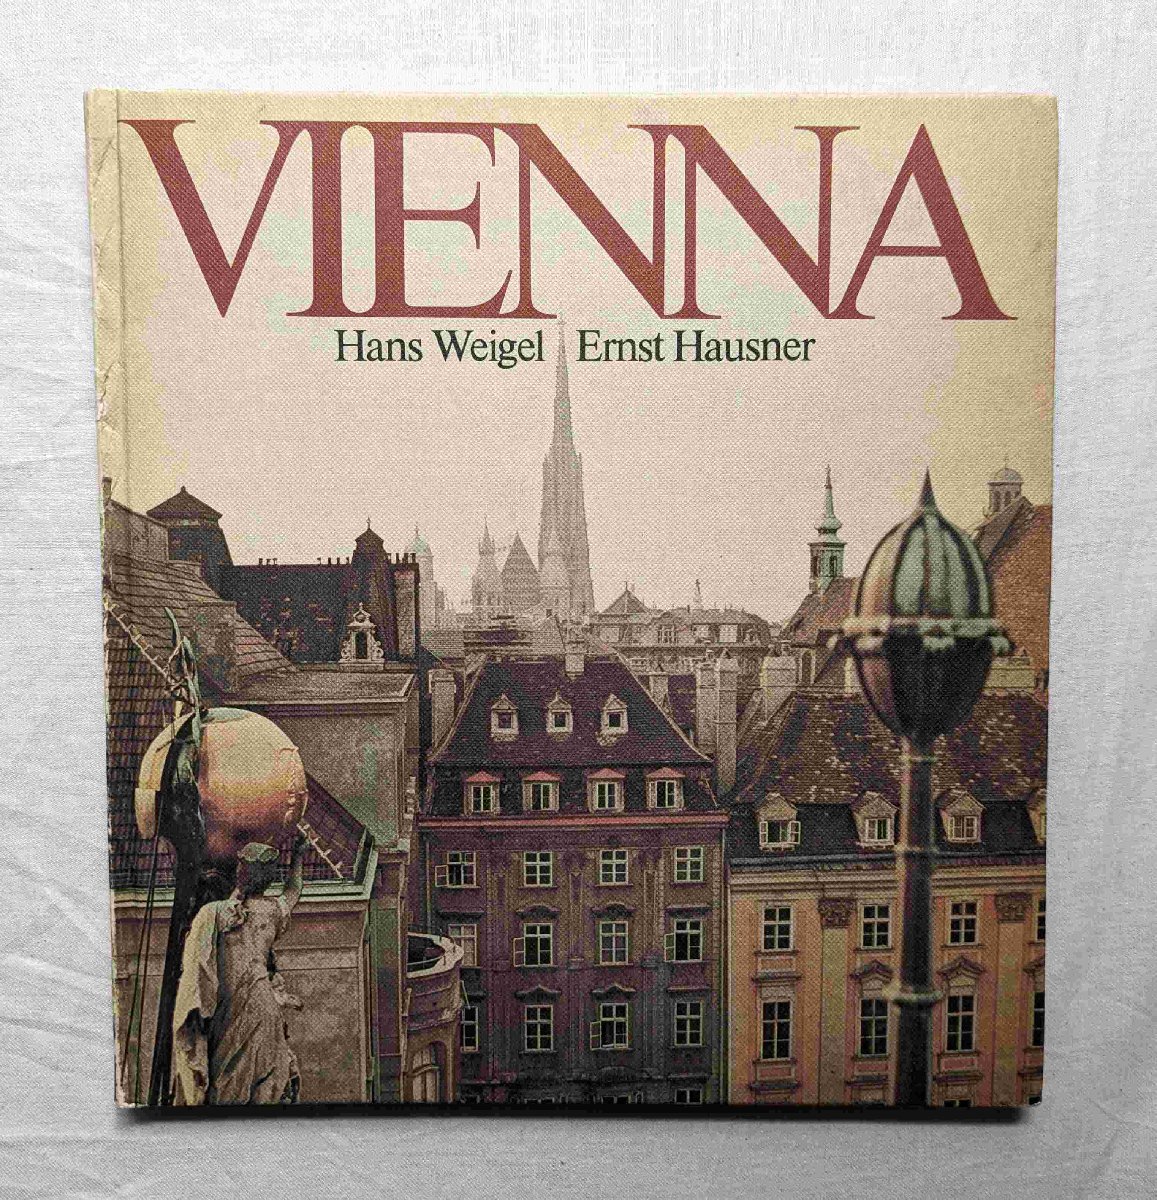 美しいウィーンの建物/街並み 洋書写真集 150点 Vienna Hans Weigel / Ernst Hausner オーストリア/東欧 世紀末建築 バロック様式の画像1